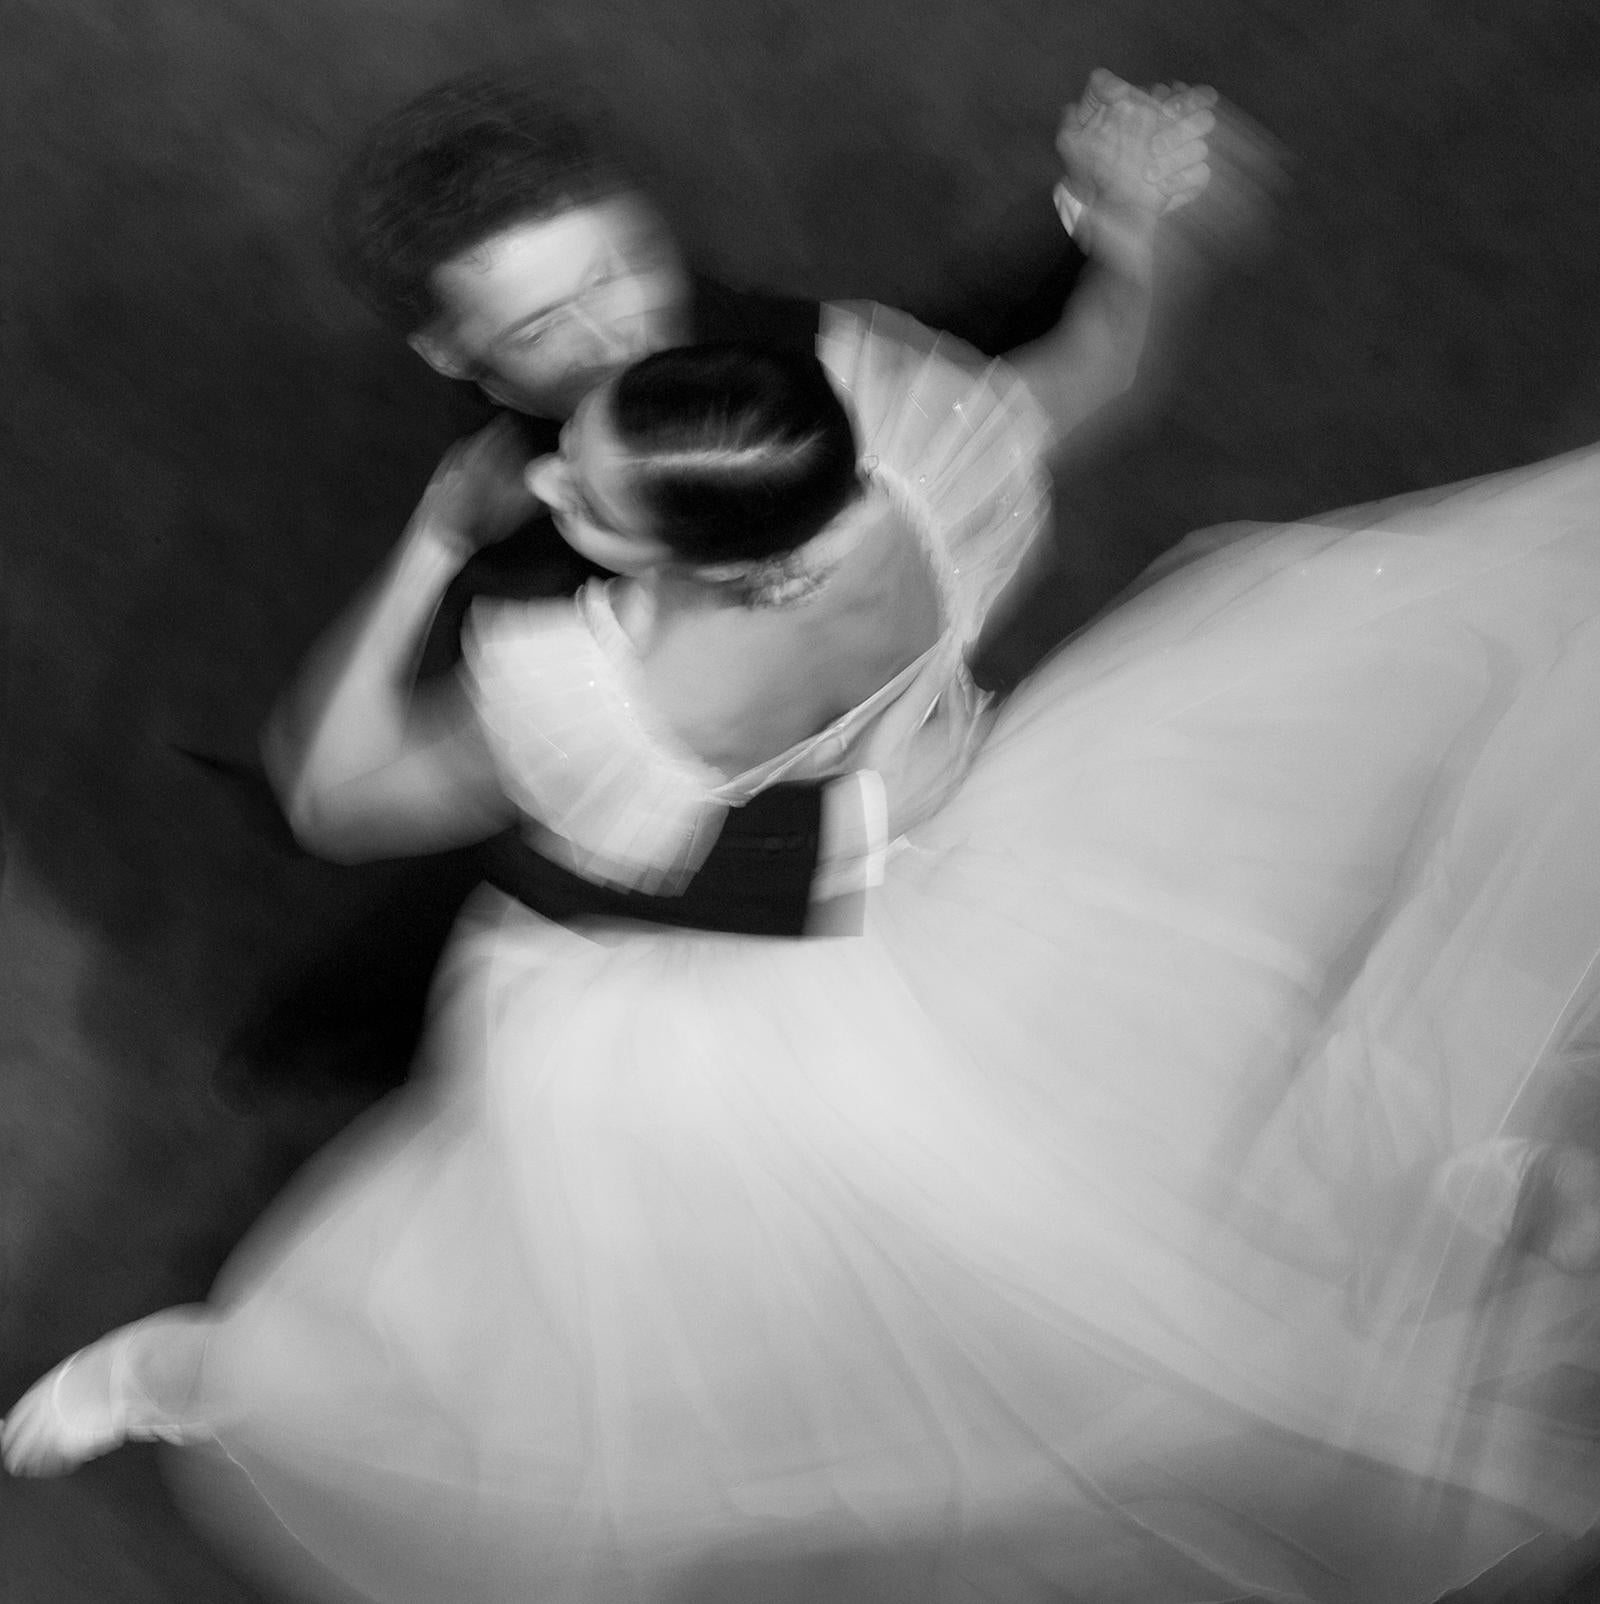 Dance - Signierter Kunstdruck in limitierter Auflage, Schwarz-Weiß-Fotografie,quare